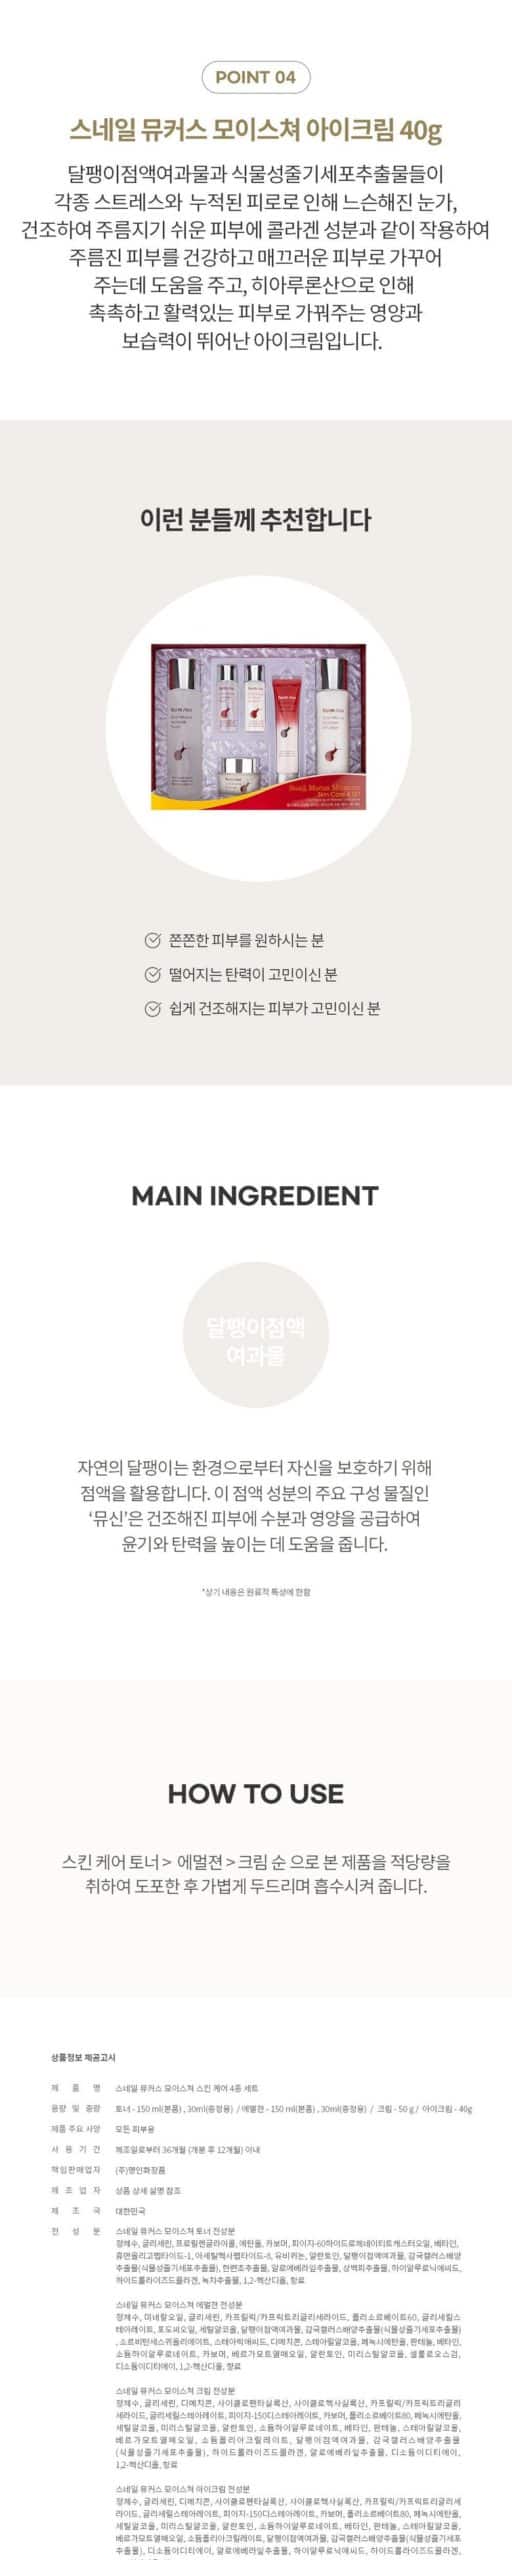 韓國食品-Farmstay蝸牛再生營養霜4件裝